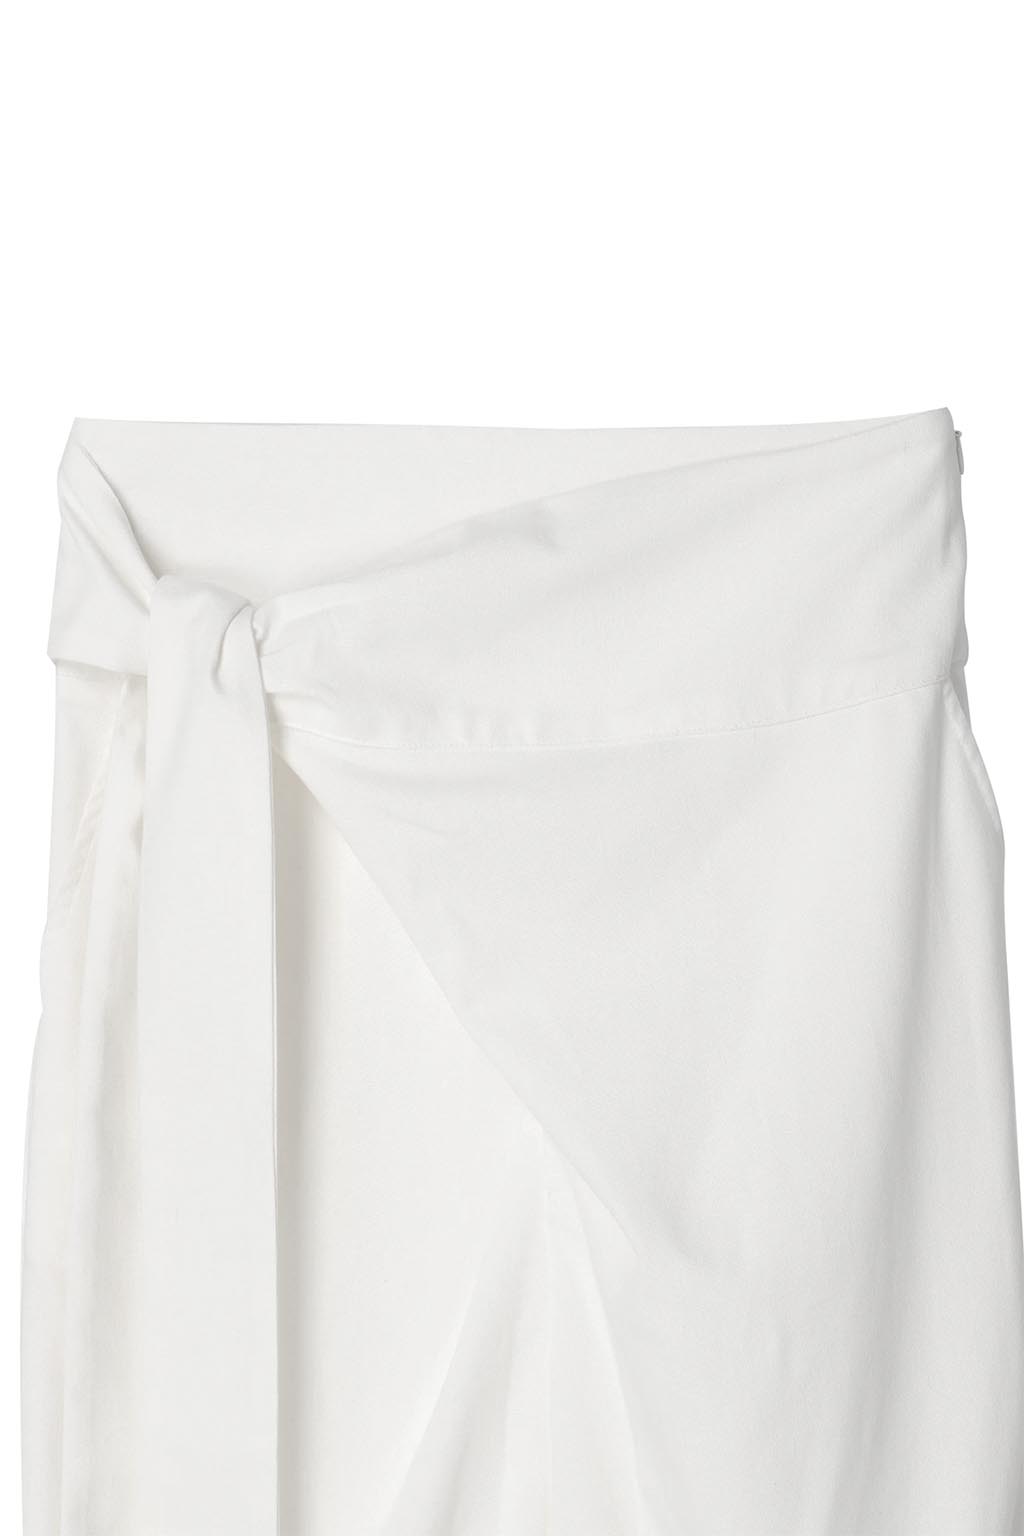 Wrap Wide Pants White 9